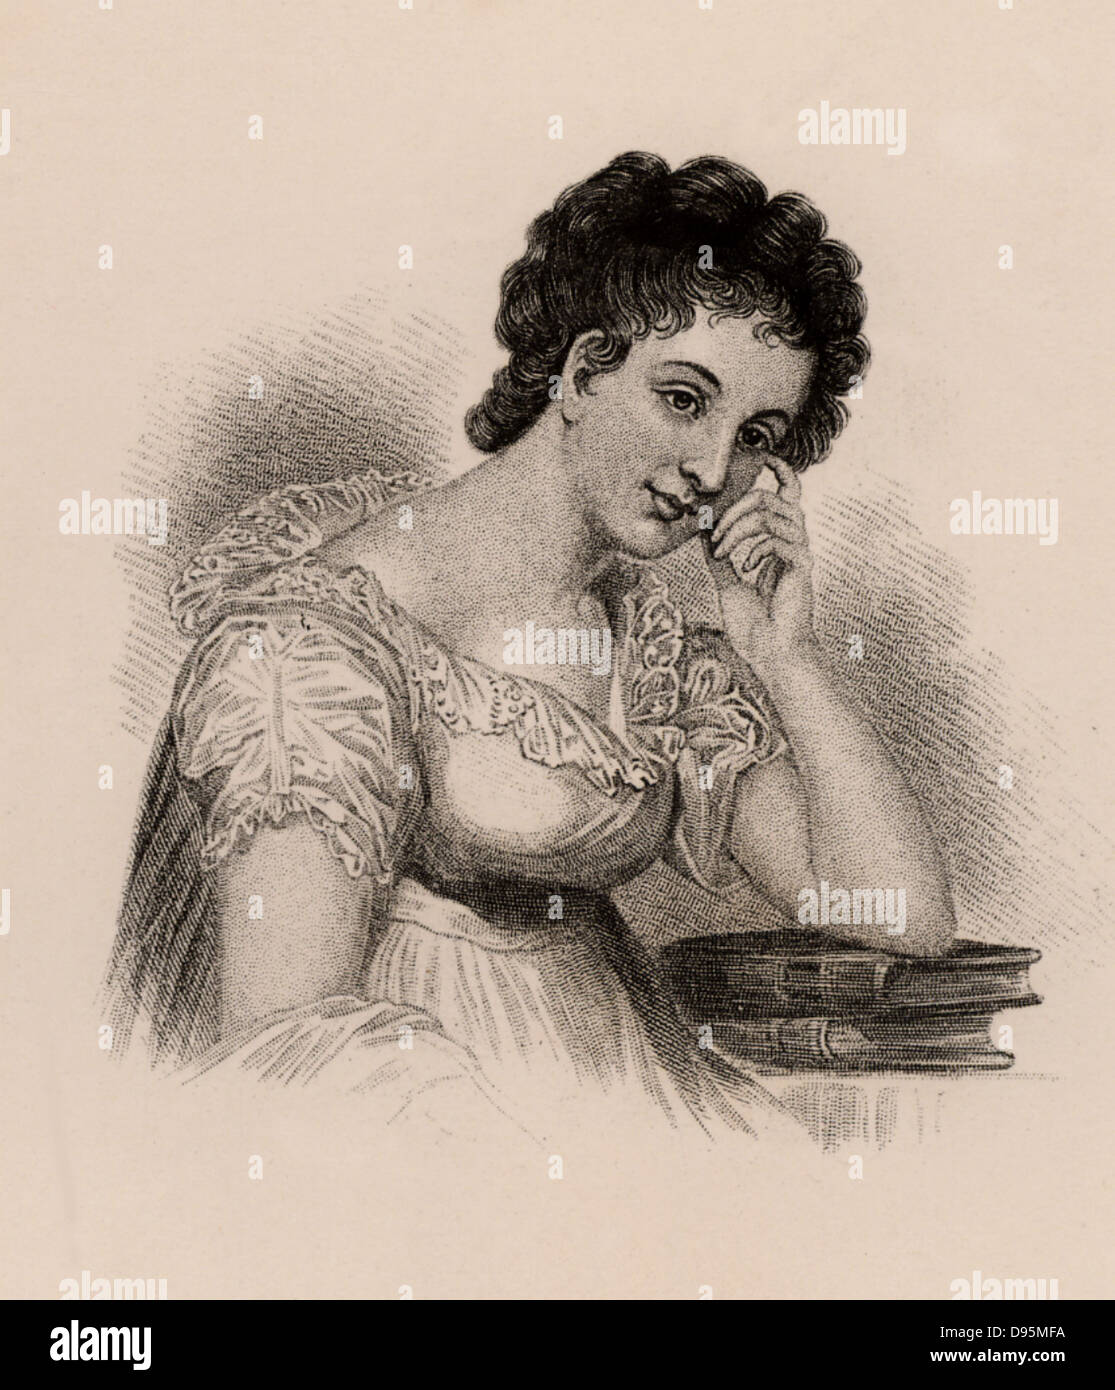 Maria Edgeworth (1767-1849) romanziere anglo-irlandese. Autore di 'Castello Rackrent' (1800) e "Belinda' (1801). Figlia di Richard Lovell Edgeworth, inventore e pedagogista. Incisione. Foto Stock